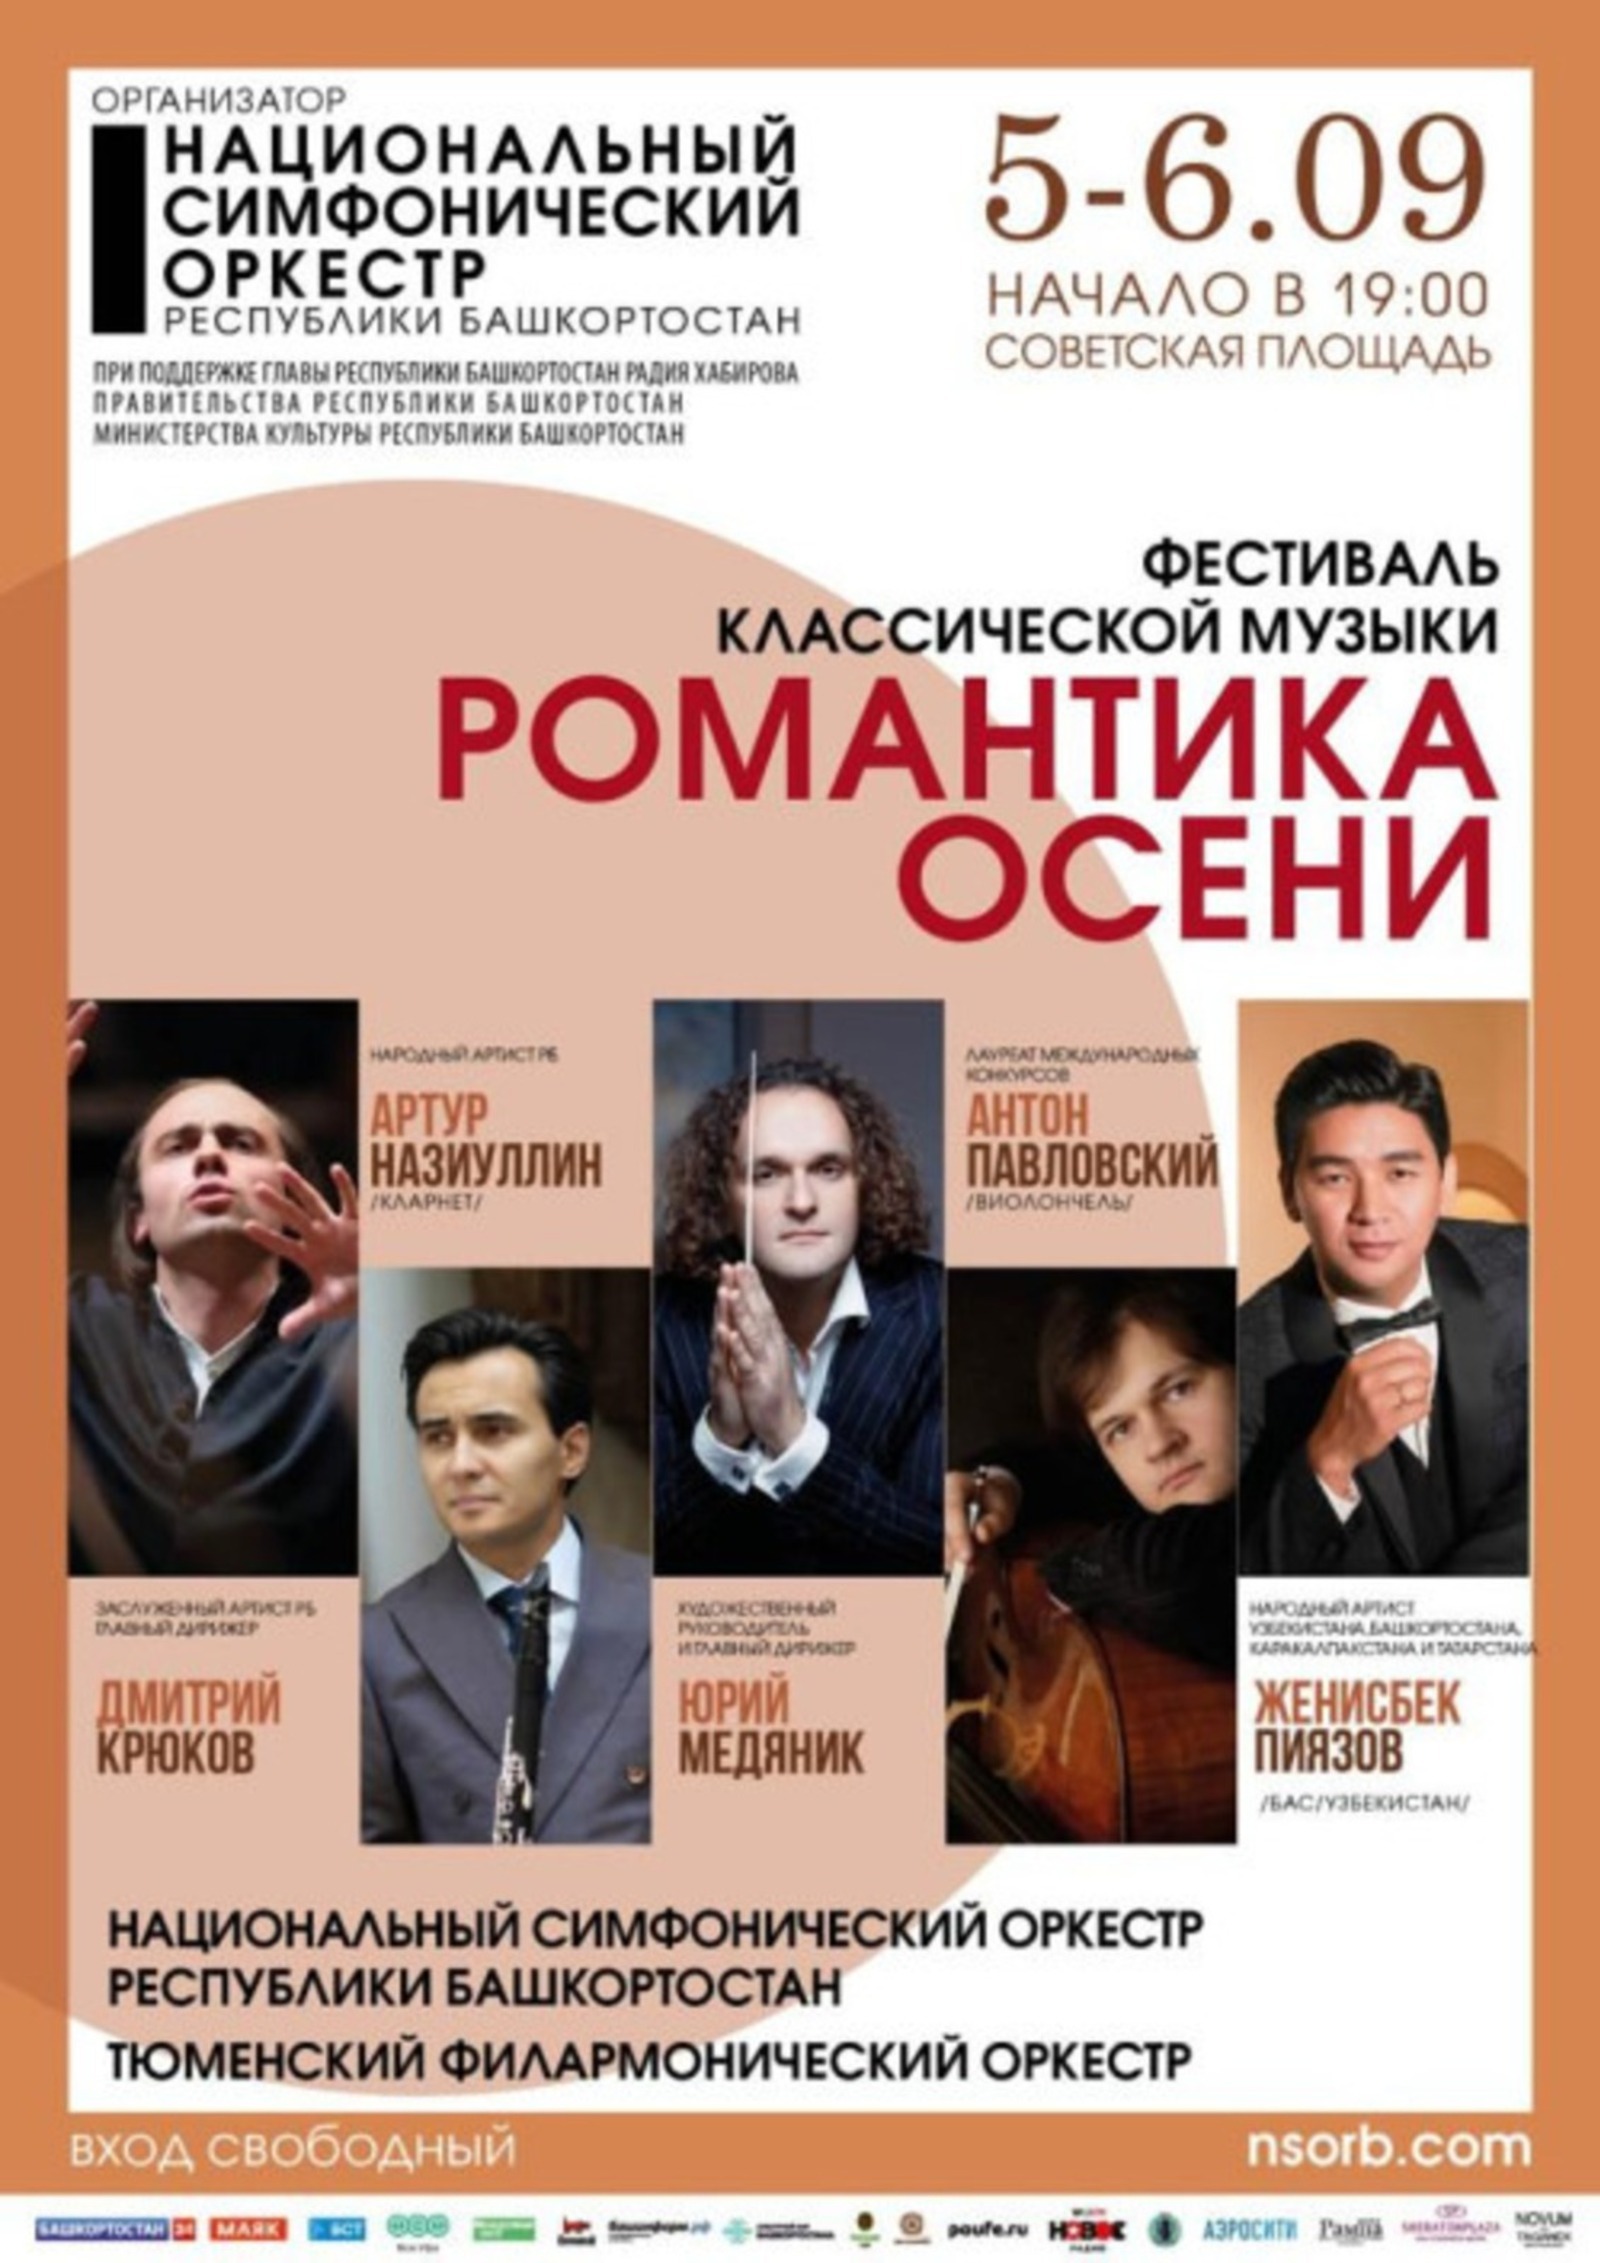 В Башкирии состоится фестиваль классической музыки «Романтика осени»